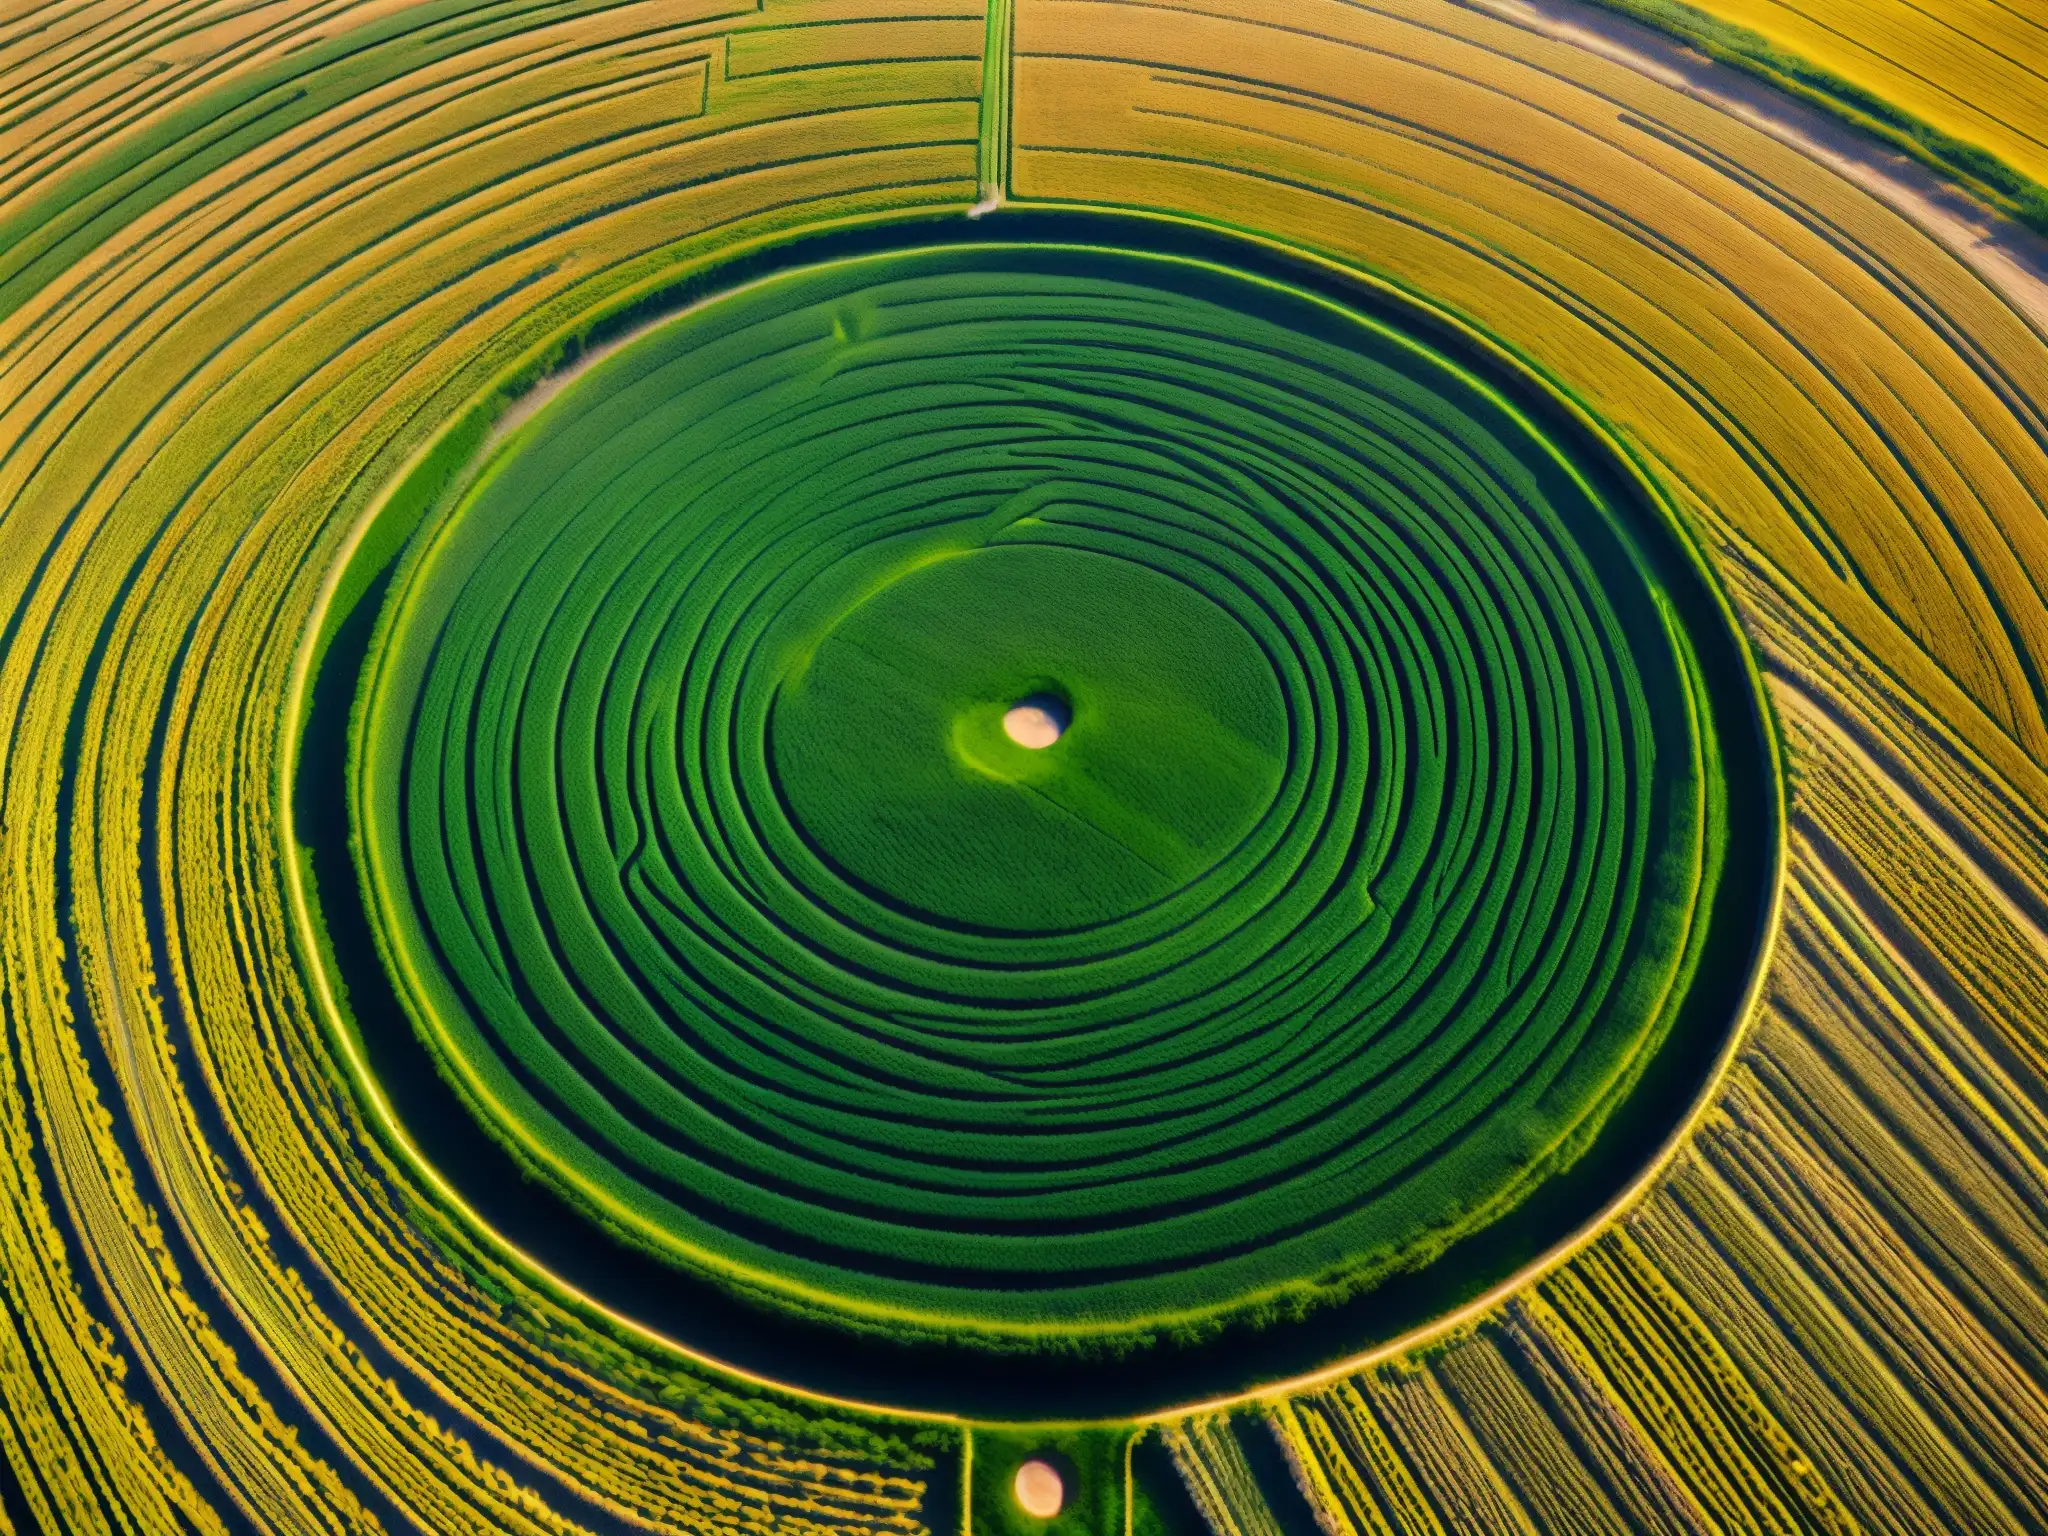 Un campo de trigo dorado muestra un intrincado círculo de cultivo con patrones geométricos y diseños en espiral